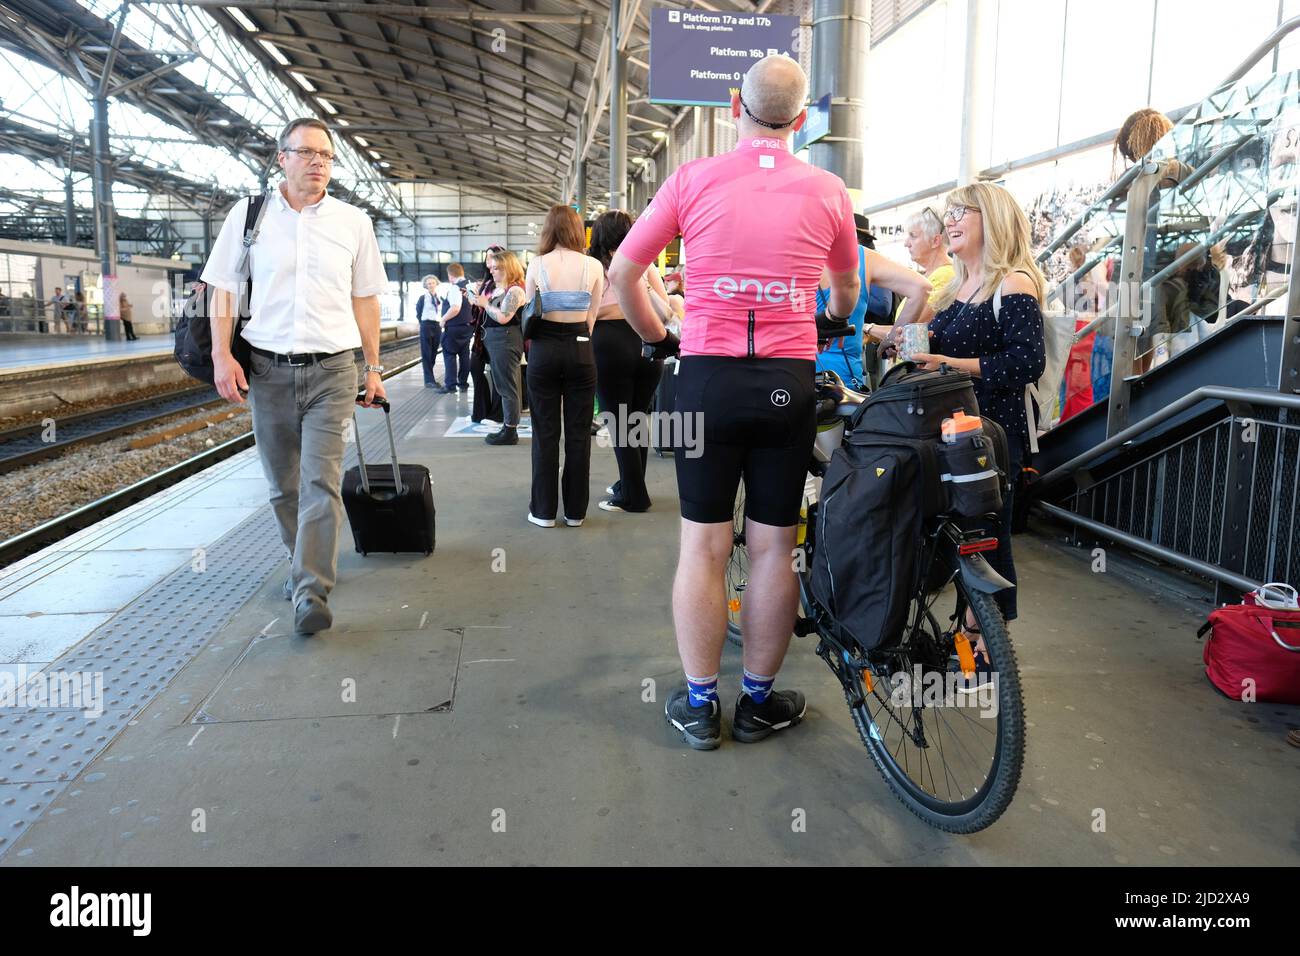 Los pasajeros del ferrocarril esperan en una plataforma muy concurrida en la estación de tren de Leeds, Reino Unido, el 16th de junio de 2022, unos días antes de la huelga nacional de los sindicatos ferroviarios. Foto de stock